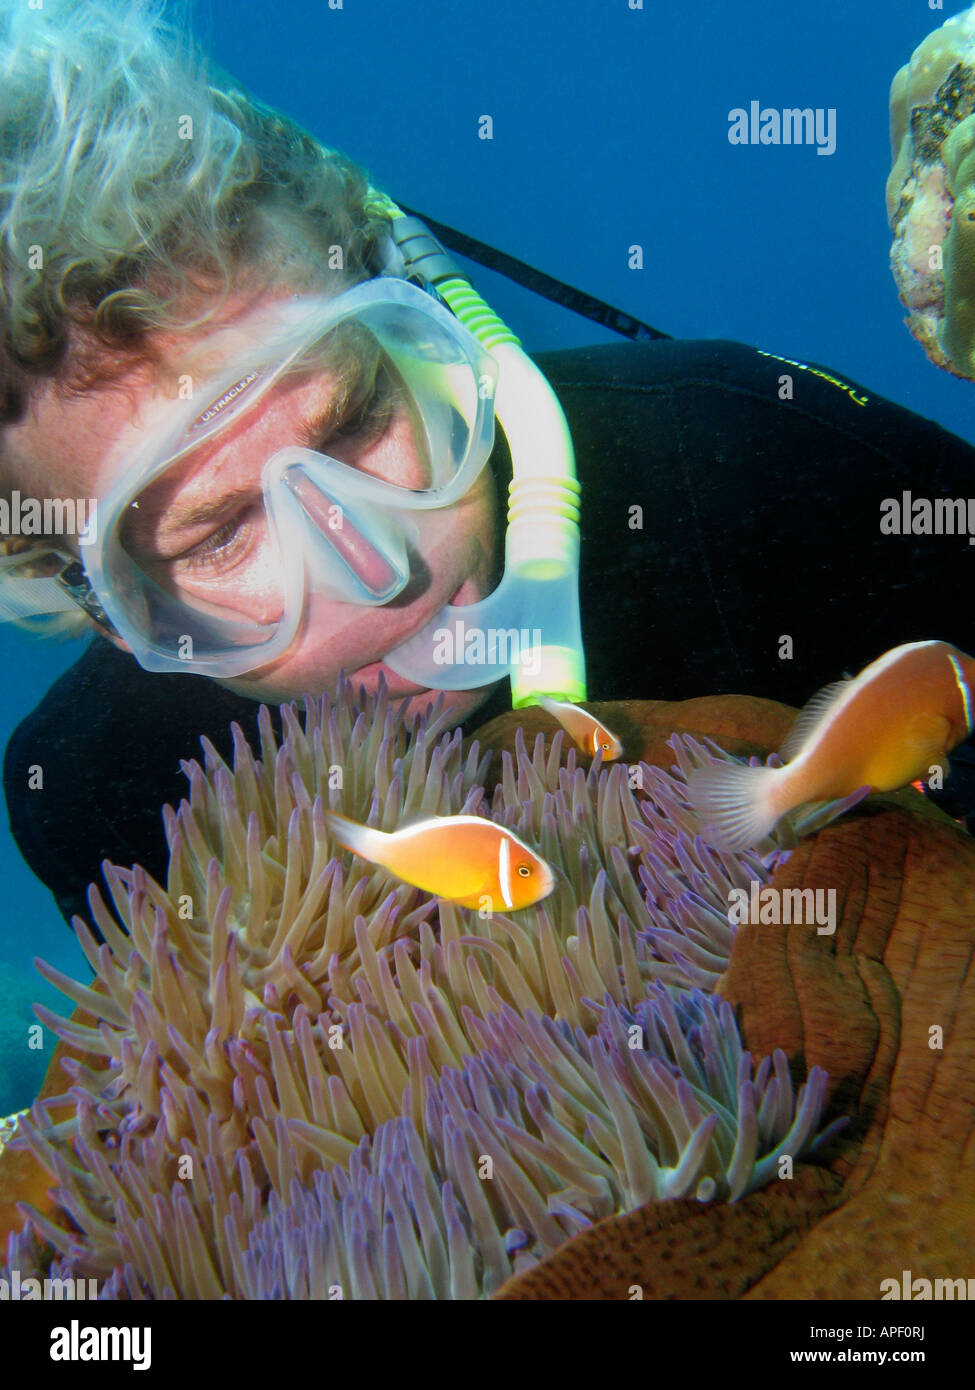 Freie Taucher und rosa Anemonenfischen Amphiprion Perideraion in Anemone Agincourt Reef Great Barrier Reef Nord-Queensland-Australien Stockfoto